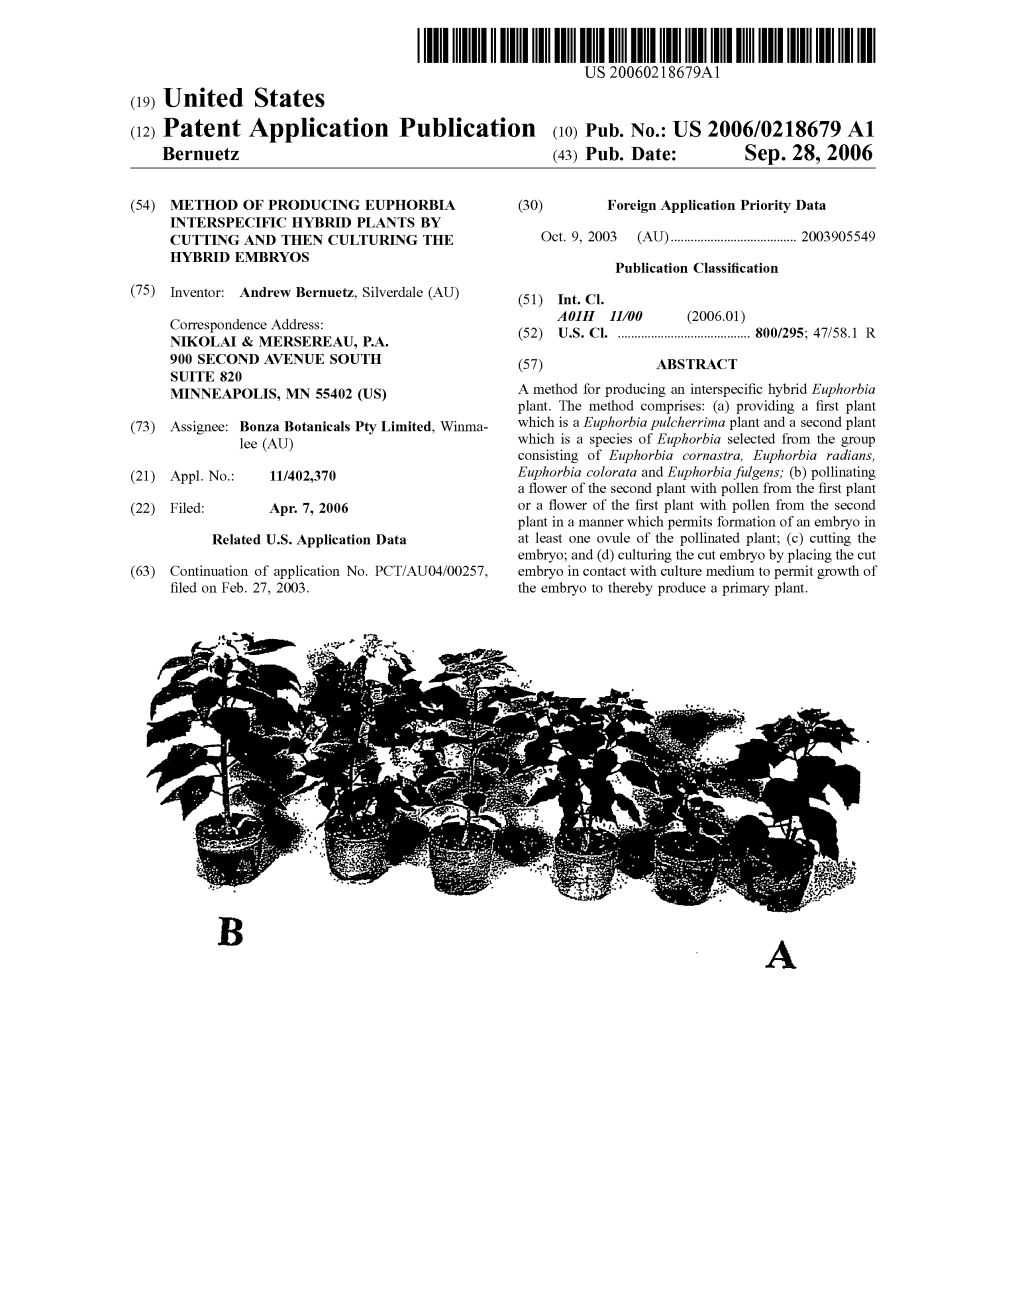 (12) Patent Application Publication (10) Pub. No.: US 2006/0218679 A1 Bernuetz (43) Pub